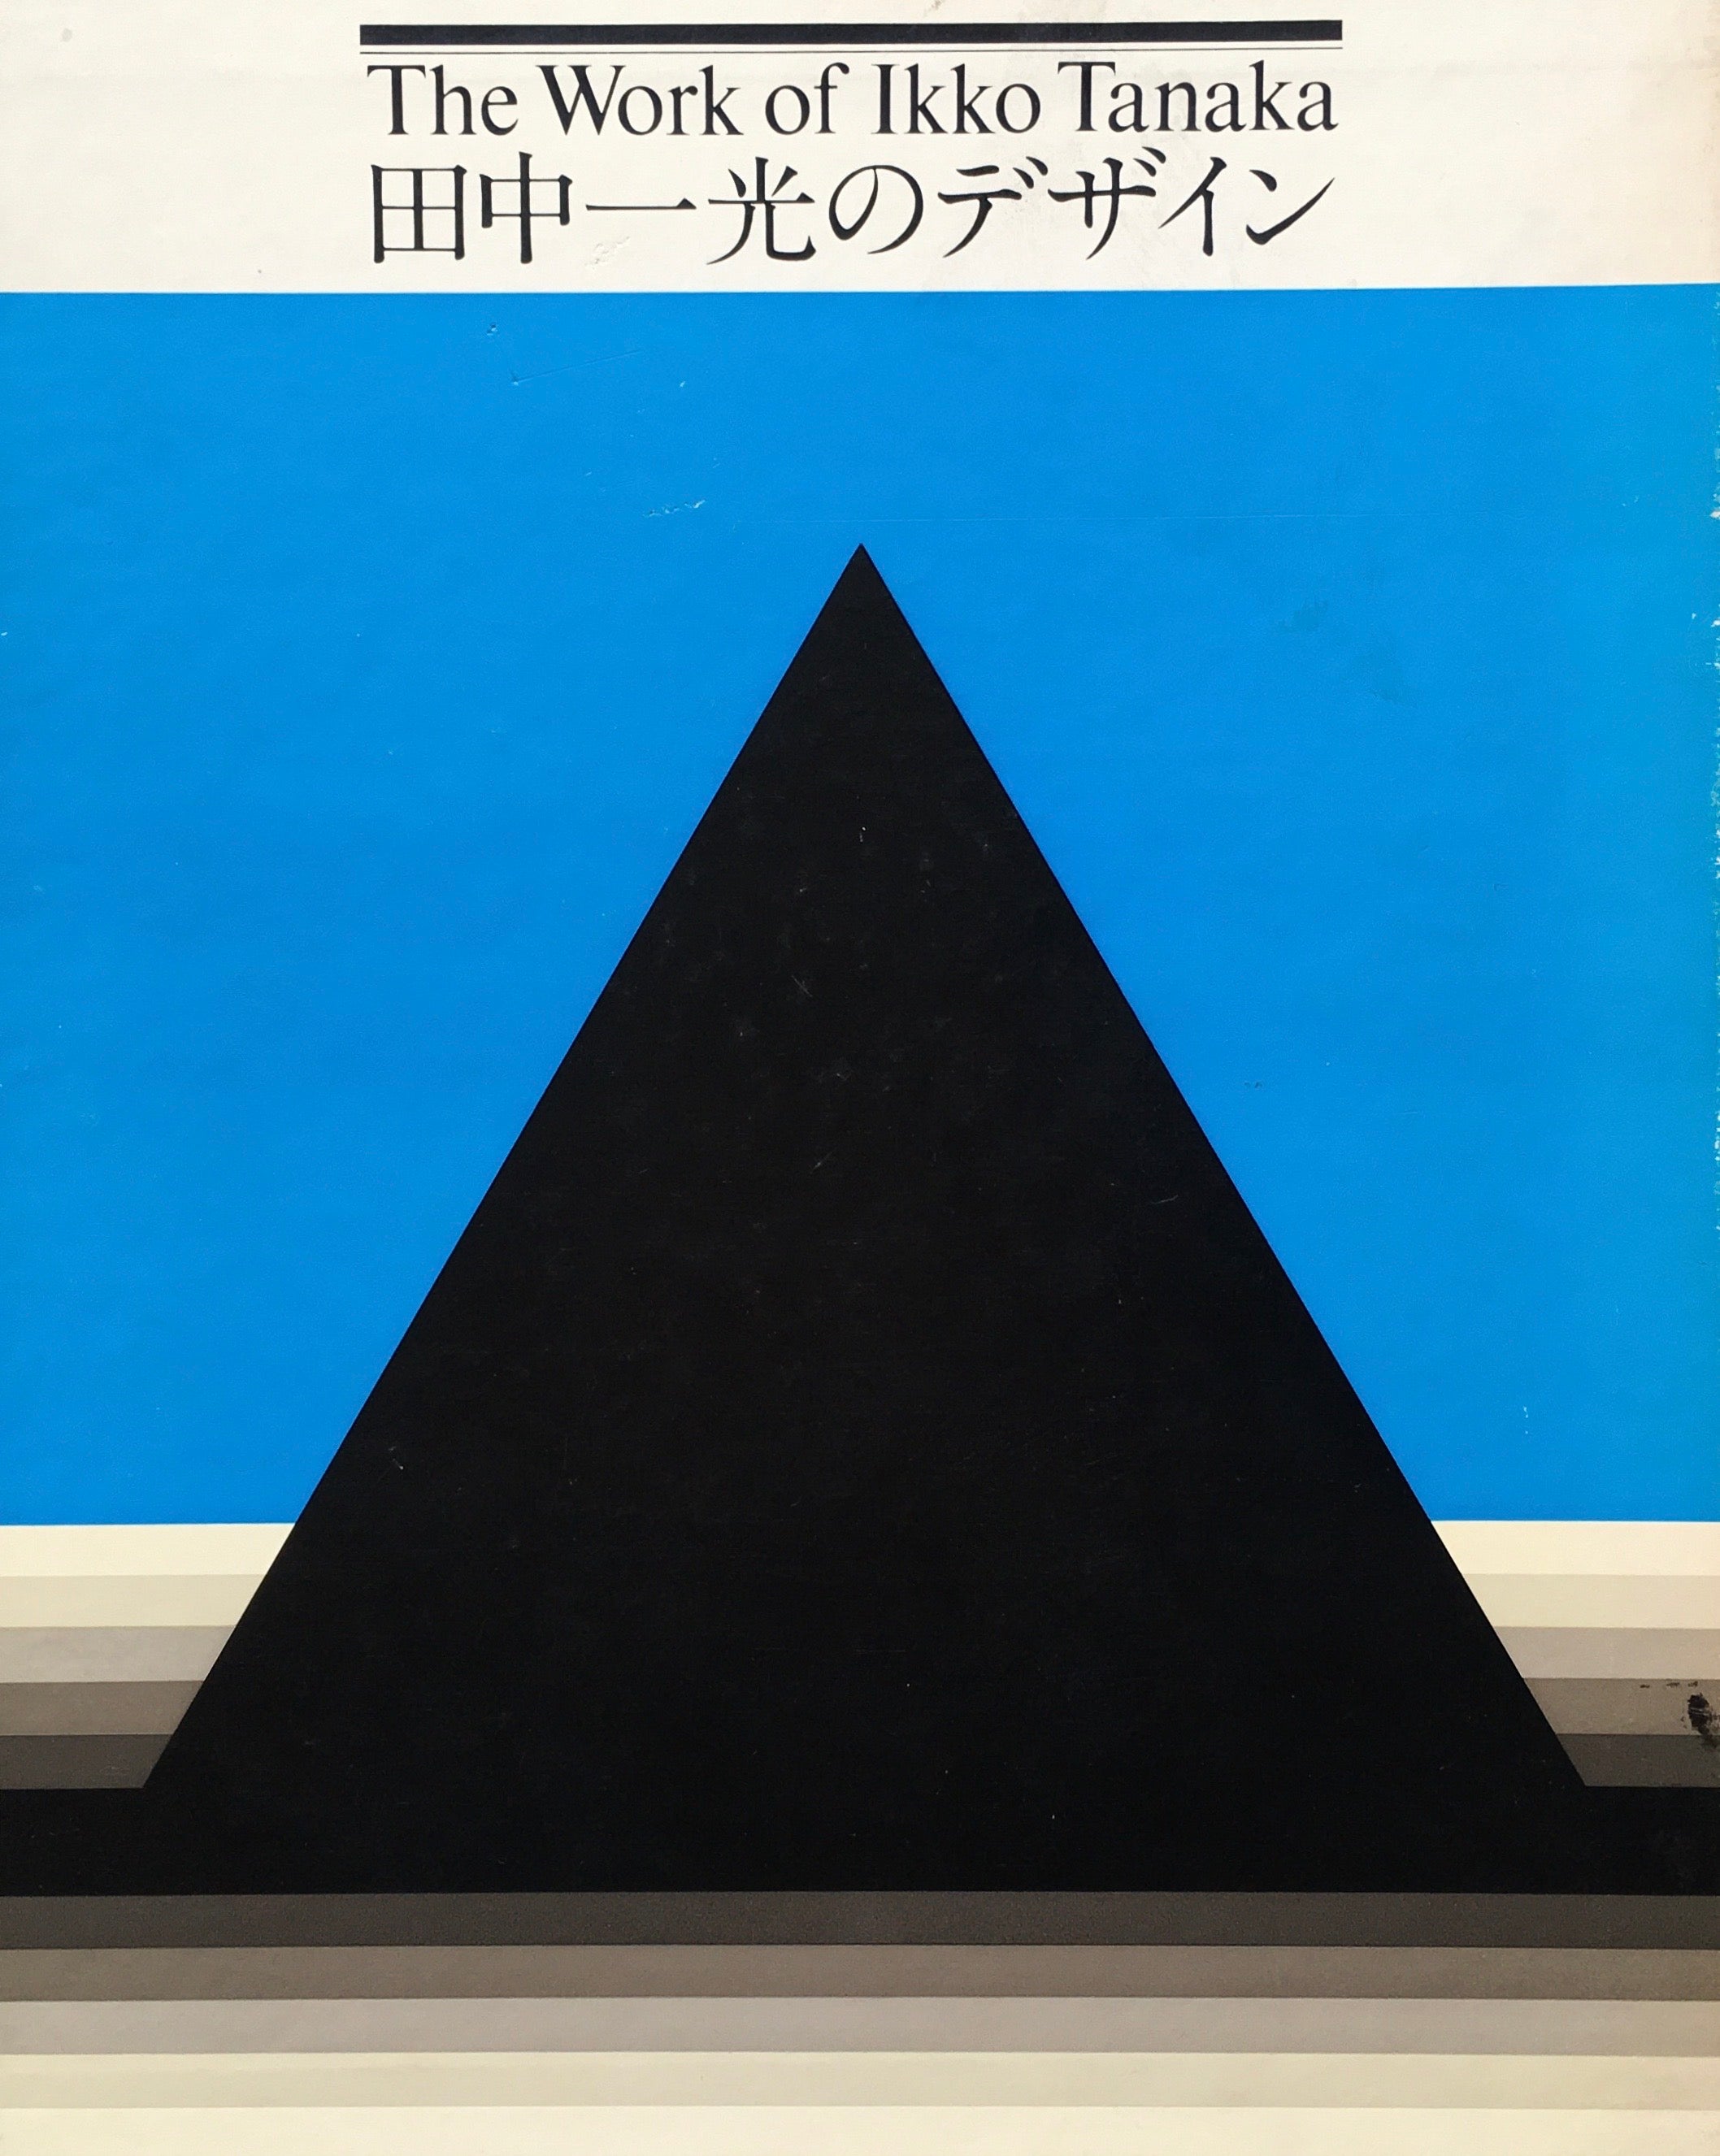 田中一光のデザイン The Work of Ikko Tanaka 1975 – smokebooks shop